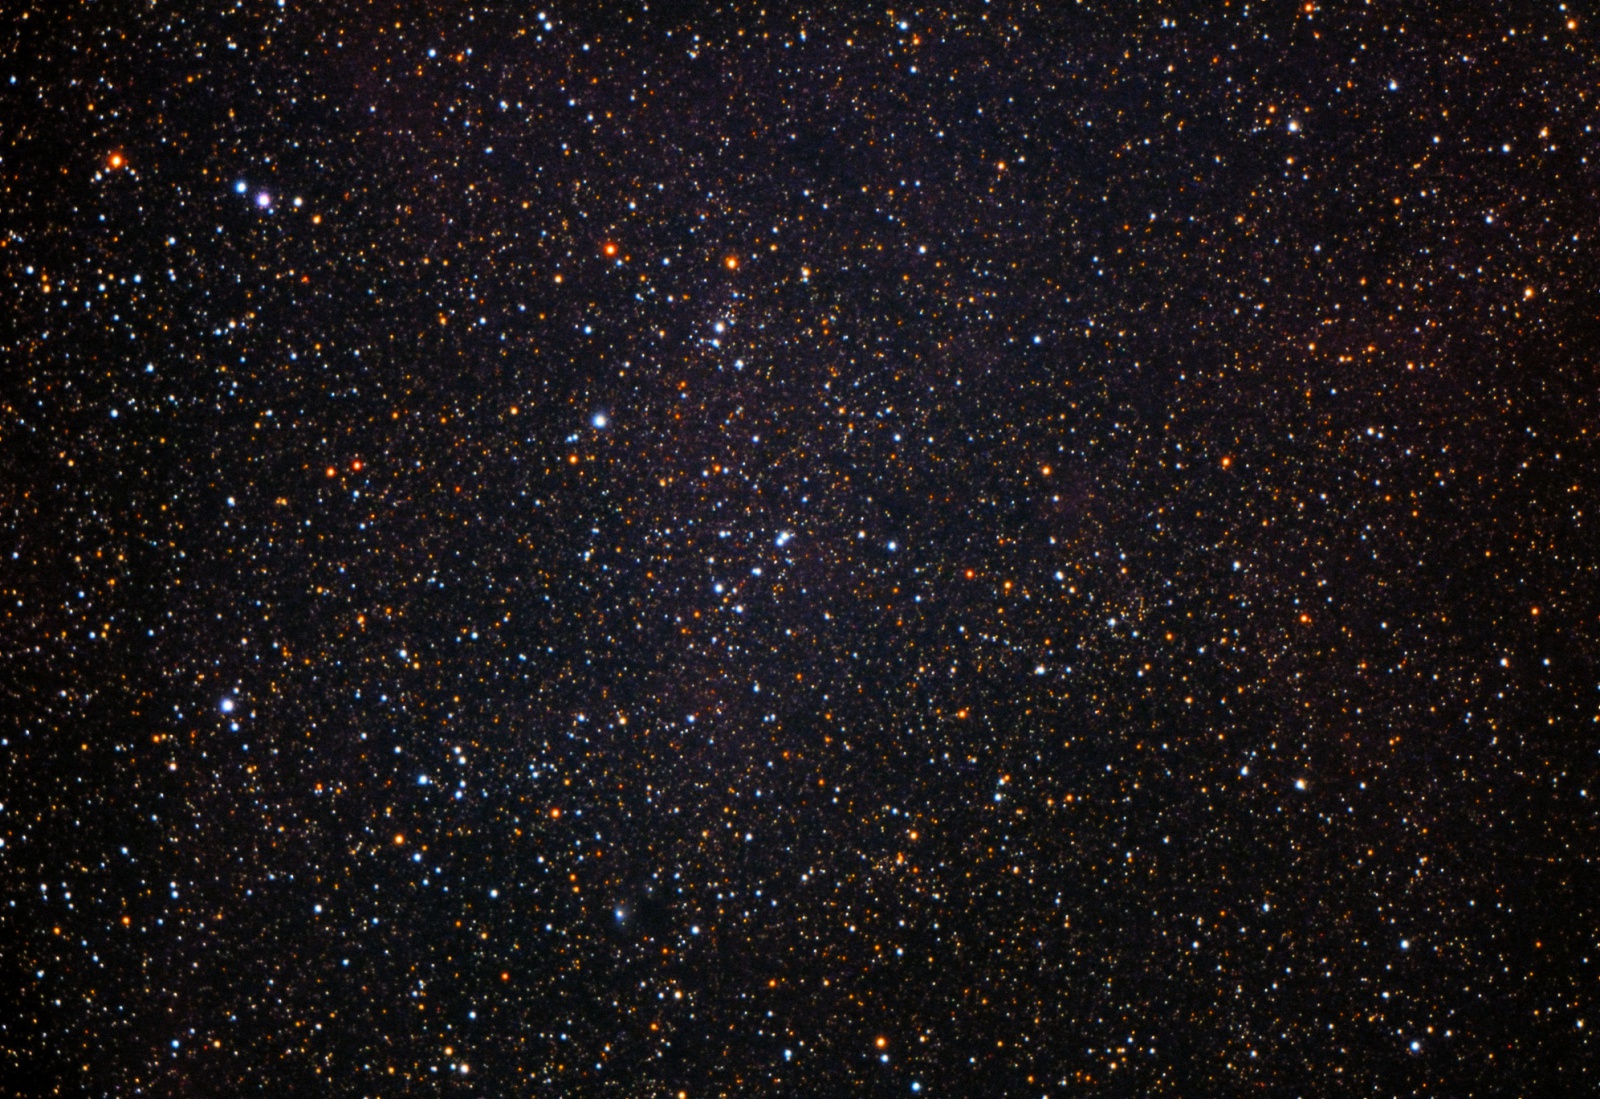 2001100405_NGC6883_flat2cjpg.thumb.jpg.8ef35c32d541f22181e1ea253a5bcdae.jpg